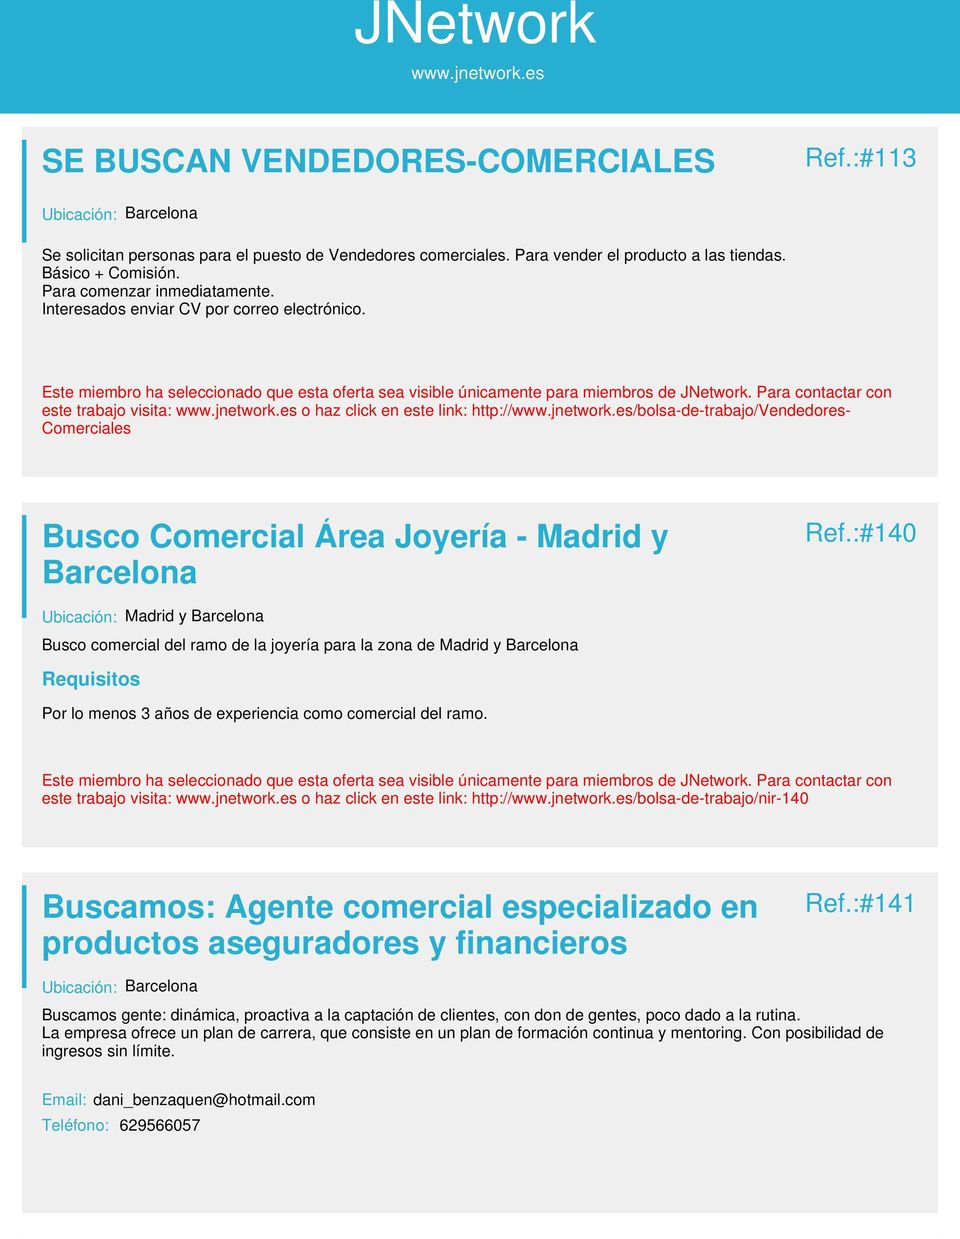 :#140 Ubicación: Madrid y Barcelona Busco comercial del ramo de la joyería para la zona de Madrid y Barcelona Por lo menos 3 años de experiencia como comercial del ramo.